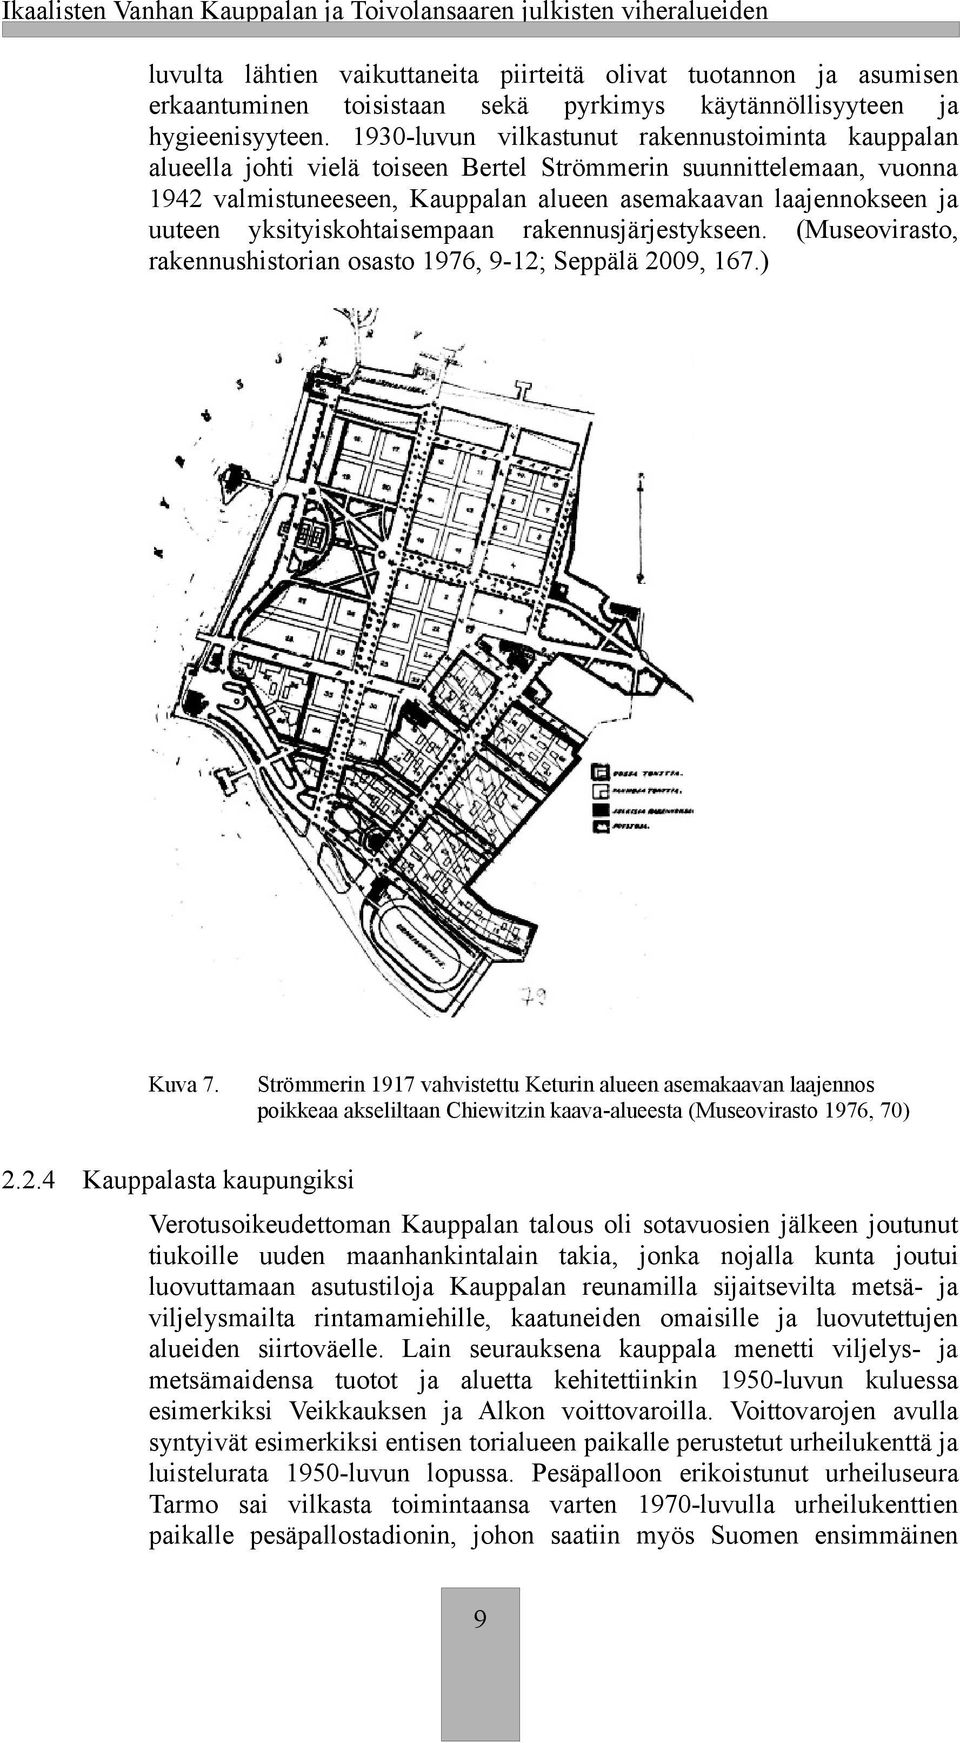 1930-luvun vilastunut raennustoiminta auppalan alueella johti vielä toiseen Bertel Strömmerin suunnittelemaan, vuonna 1942 valmistuneeseen, Kauppalan alueen asemaaavan laajennoseen ja uuteen